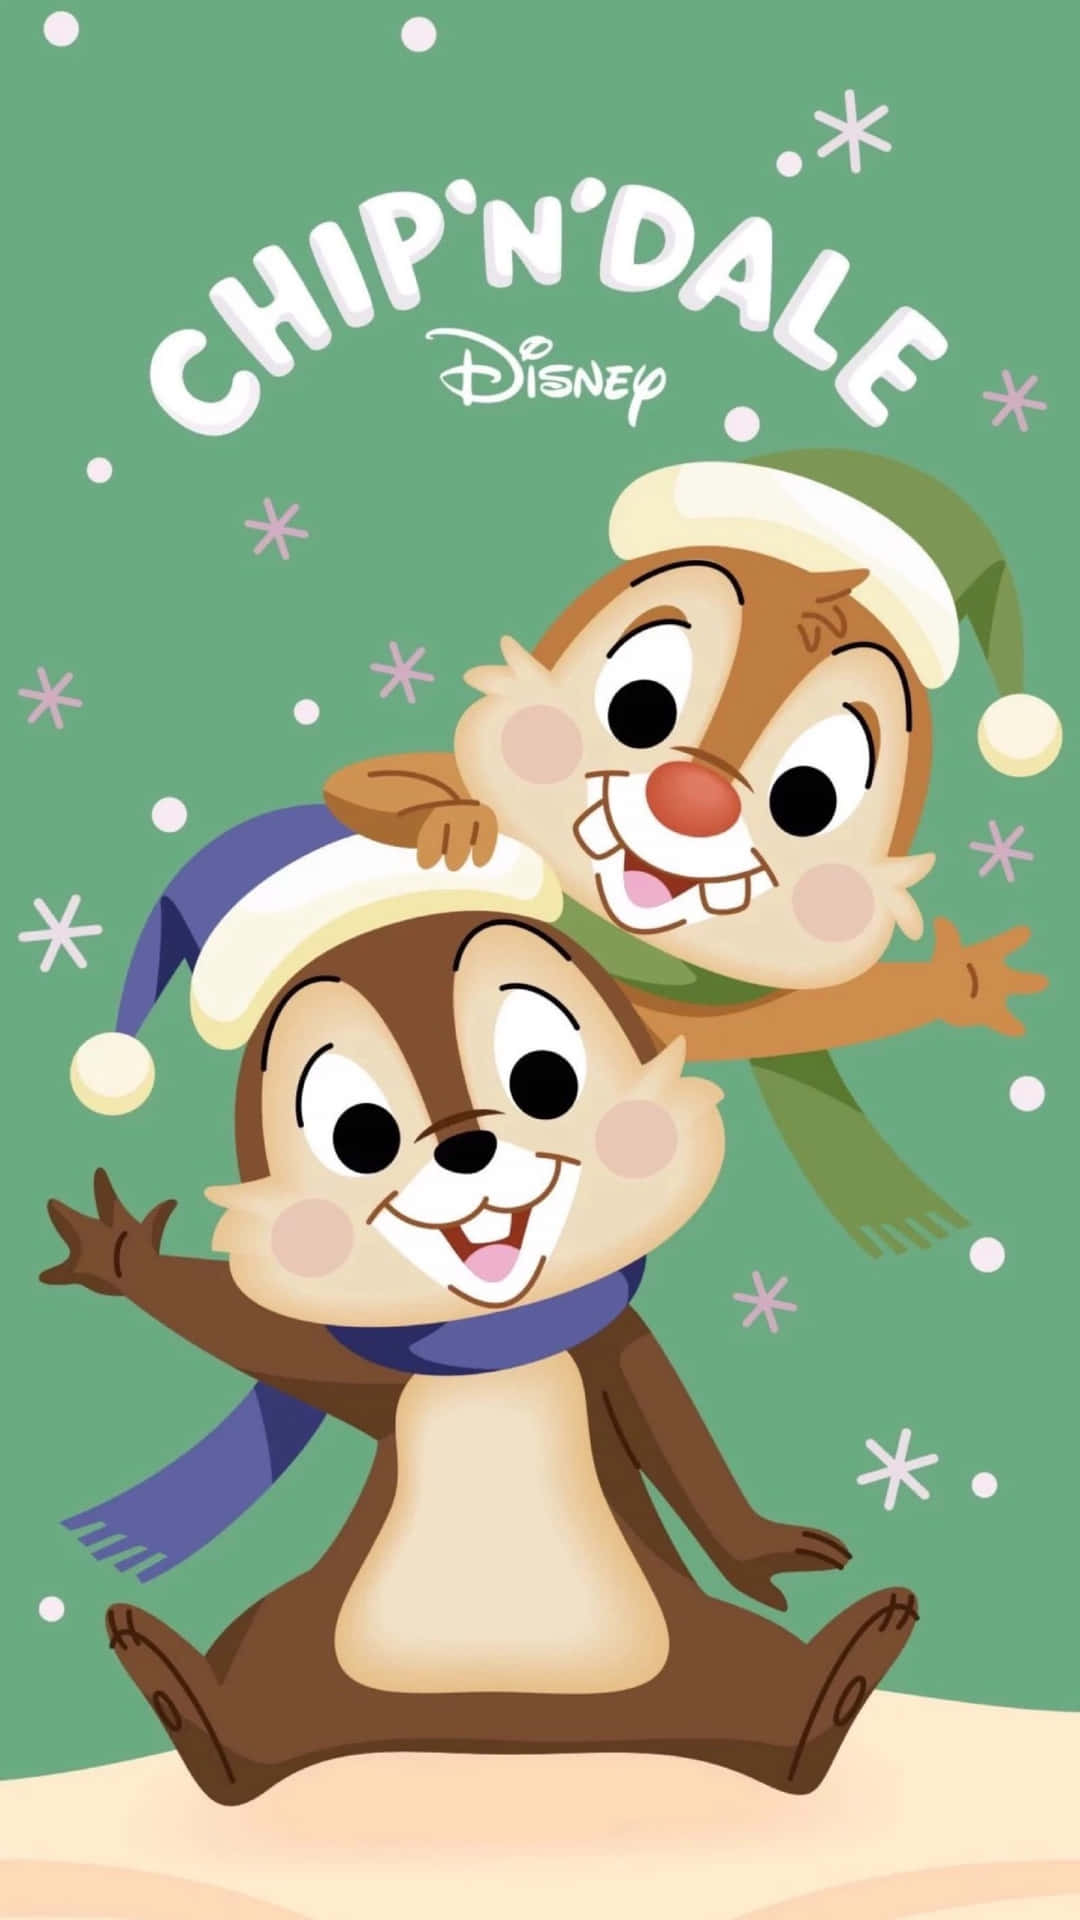 Feiernsie Weihnachten Mit Liebenswerten Disney-charakteren!